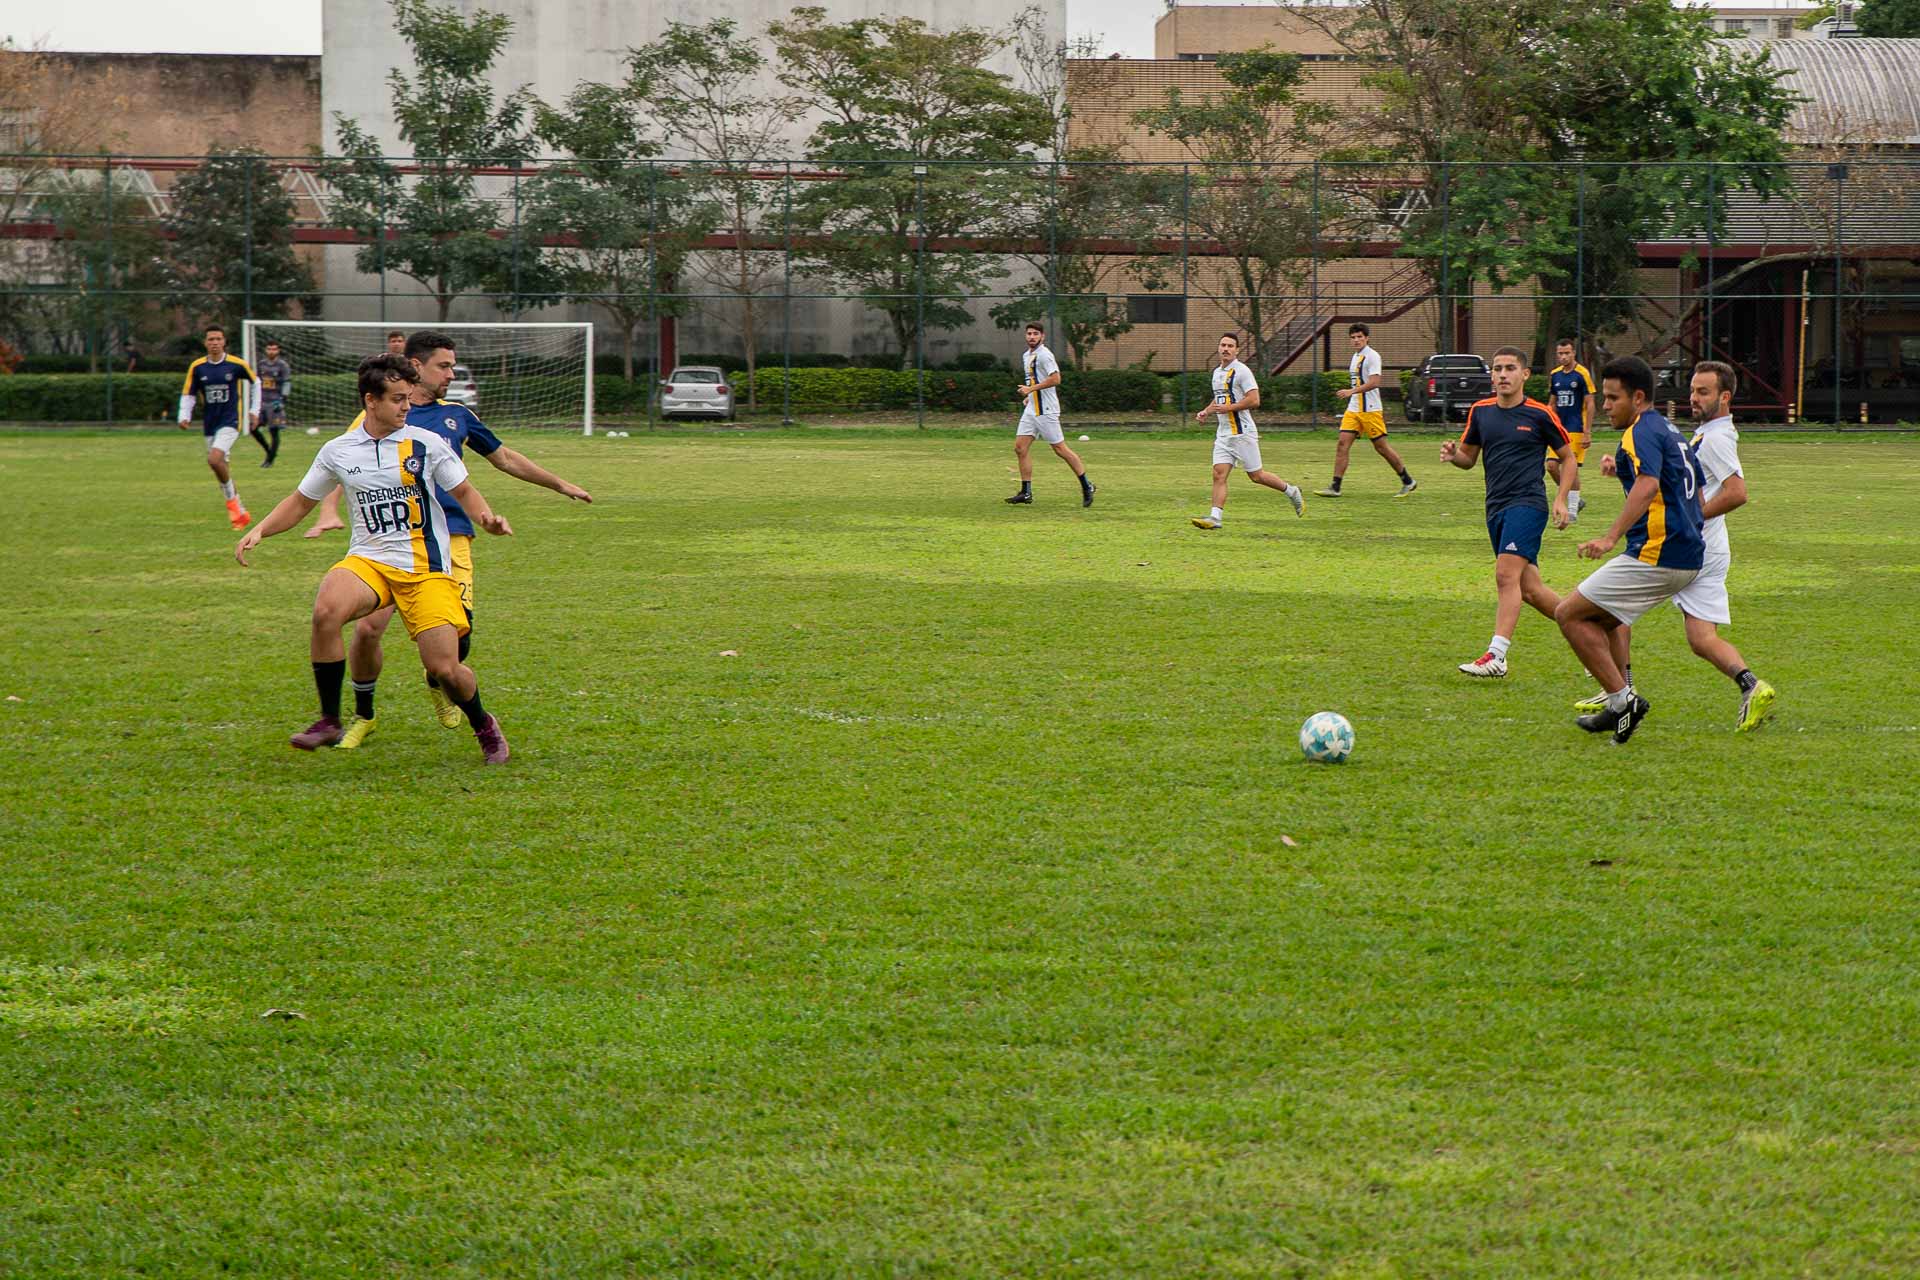 Fotografia mostra grupo de estudantes jogando futebol em um campo. Um dos times usa uniforme branco e amarelo, o outro usa uniforme azul escuro e amarelo, ambos com os dizeres Engenharia UFRJ.